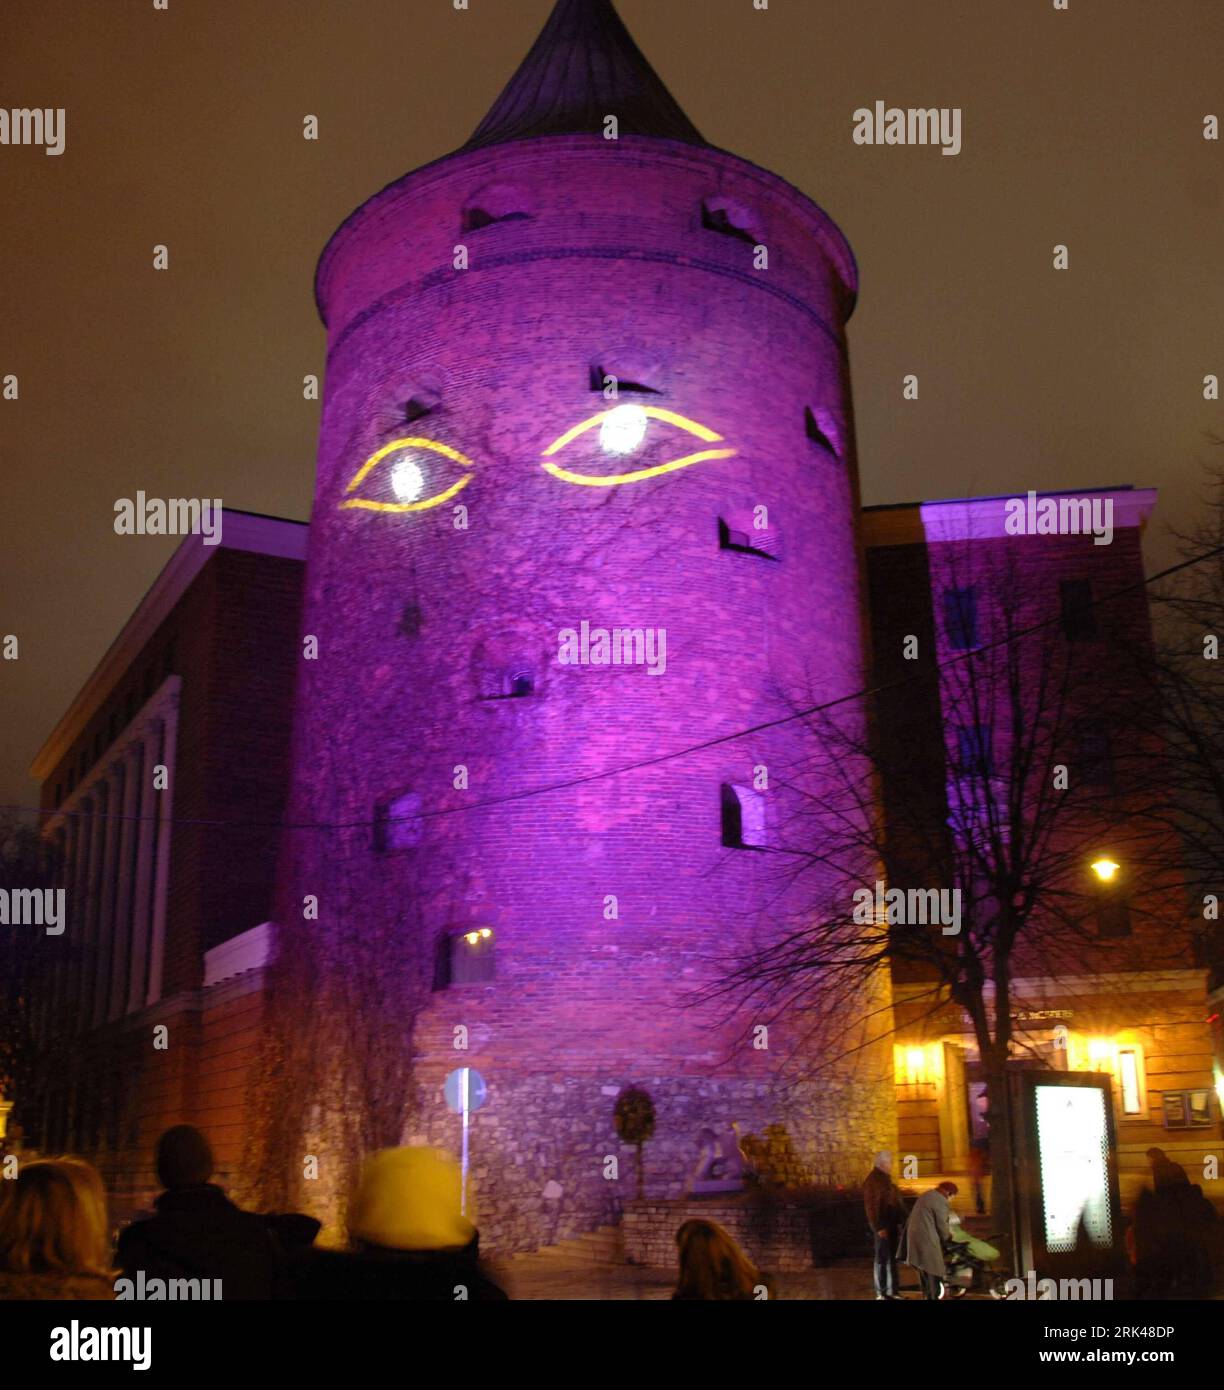 Bildnummer: 53599520 Datum: 14.11.2009 Copyright: imago/Xinhua (091115) -- RIGA, 15. November 2009 (Xinhua) -- Pass by Tower Pulvertornis, der in Riga, Lettland, am 14. November 2009 beleuchtet wird. Riga begann das zweite Lichtkunstfestival anlässlich des 91. Jahrestages der Unabhängigkeit des Landes auf Satureday. Lettland erklärte am 18. November 1918 nach dem Ende des Ersten Weltkriegs die Unabhängigkeit (Xinhua/Yang Dehong) (hdt) (2)LETTLAND-UNABHÄNGIGKEITS-JUBILÄUM PUBLICATIONxNOTxINxCHN Politik Jahrestag Unabhängigkeit Lettland kbdig xcb 2009 Quadrat Uraufführung o0 Beleuchtung, Illumination, Turm, Augen Bildnummer 5359 Stockfoto